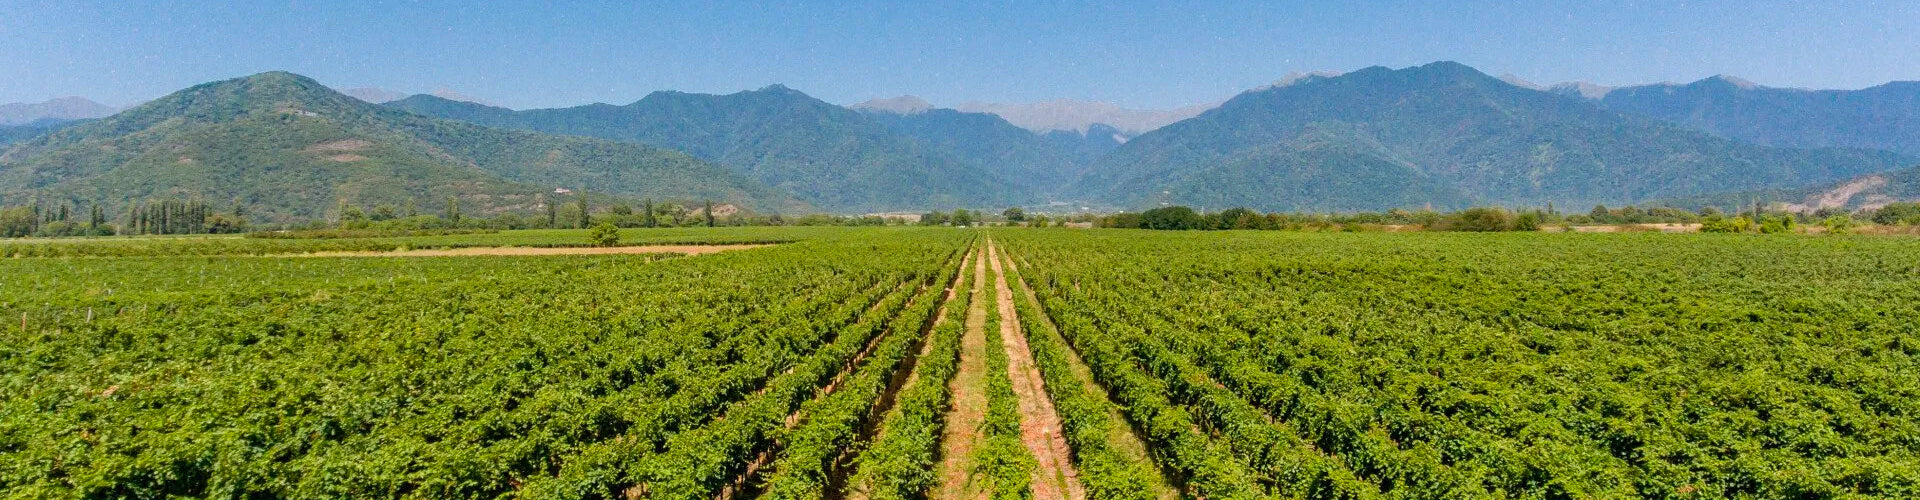 Bedoba Vineyards in Kakheti, Georgia